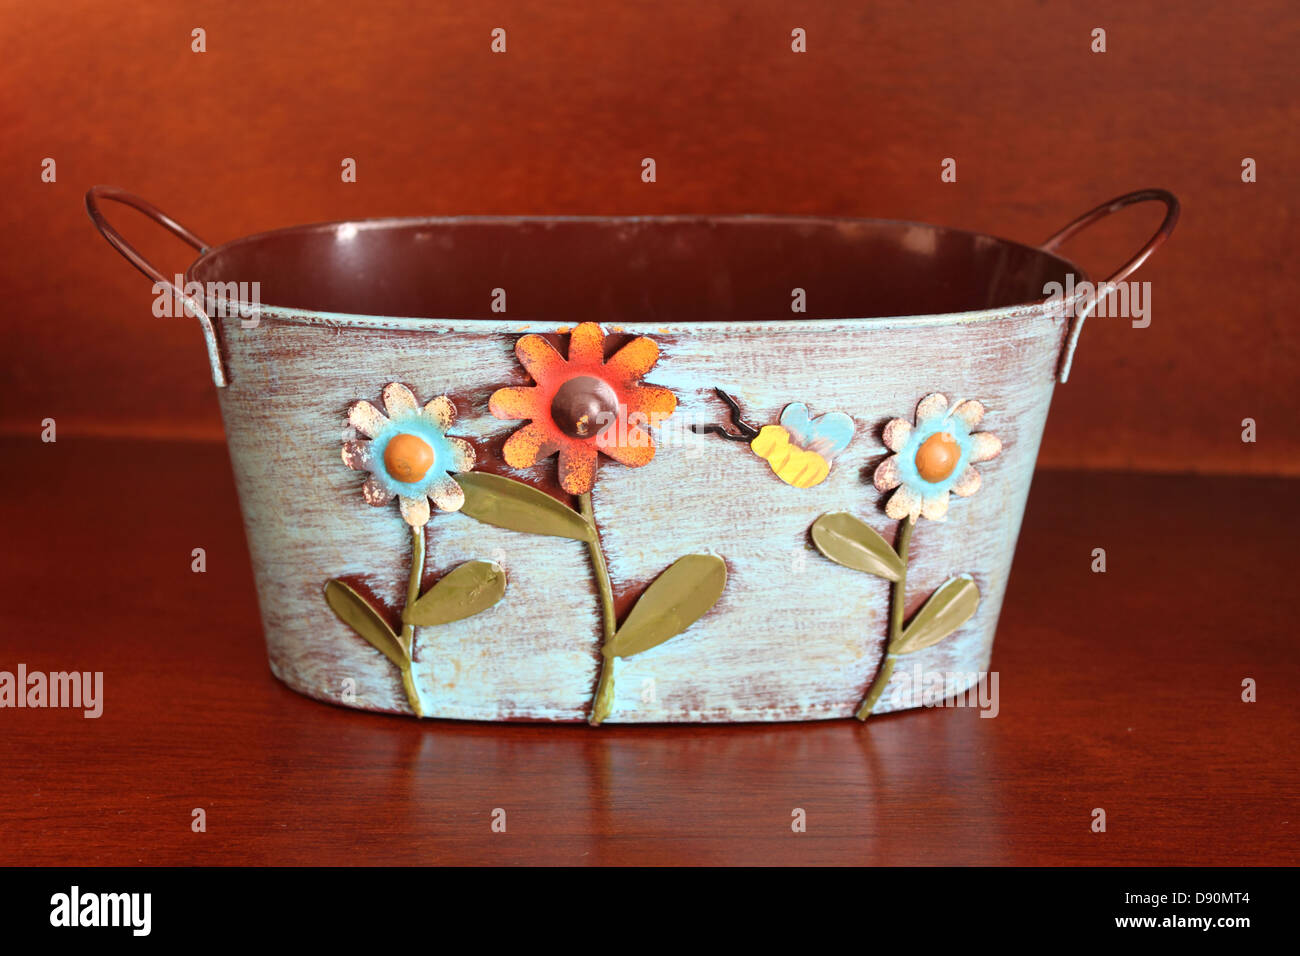 Metallkorb für Blumen verziert Stockfotografie - Alamy